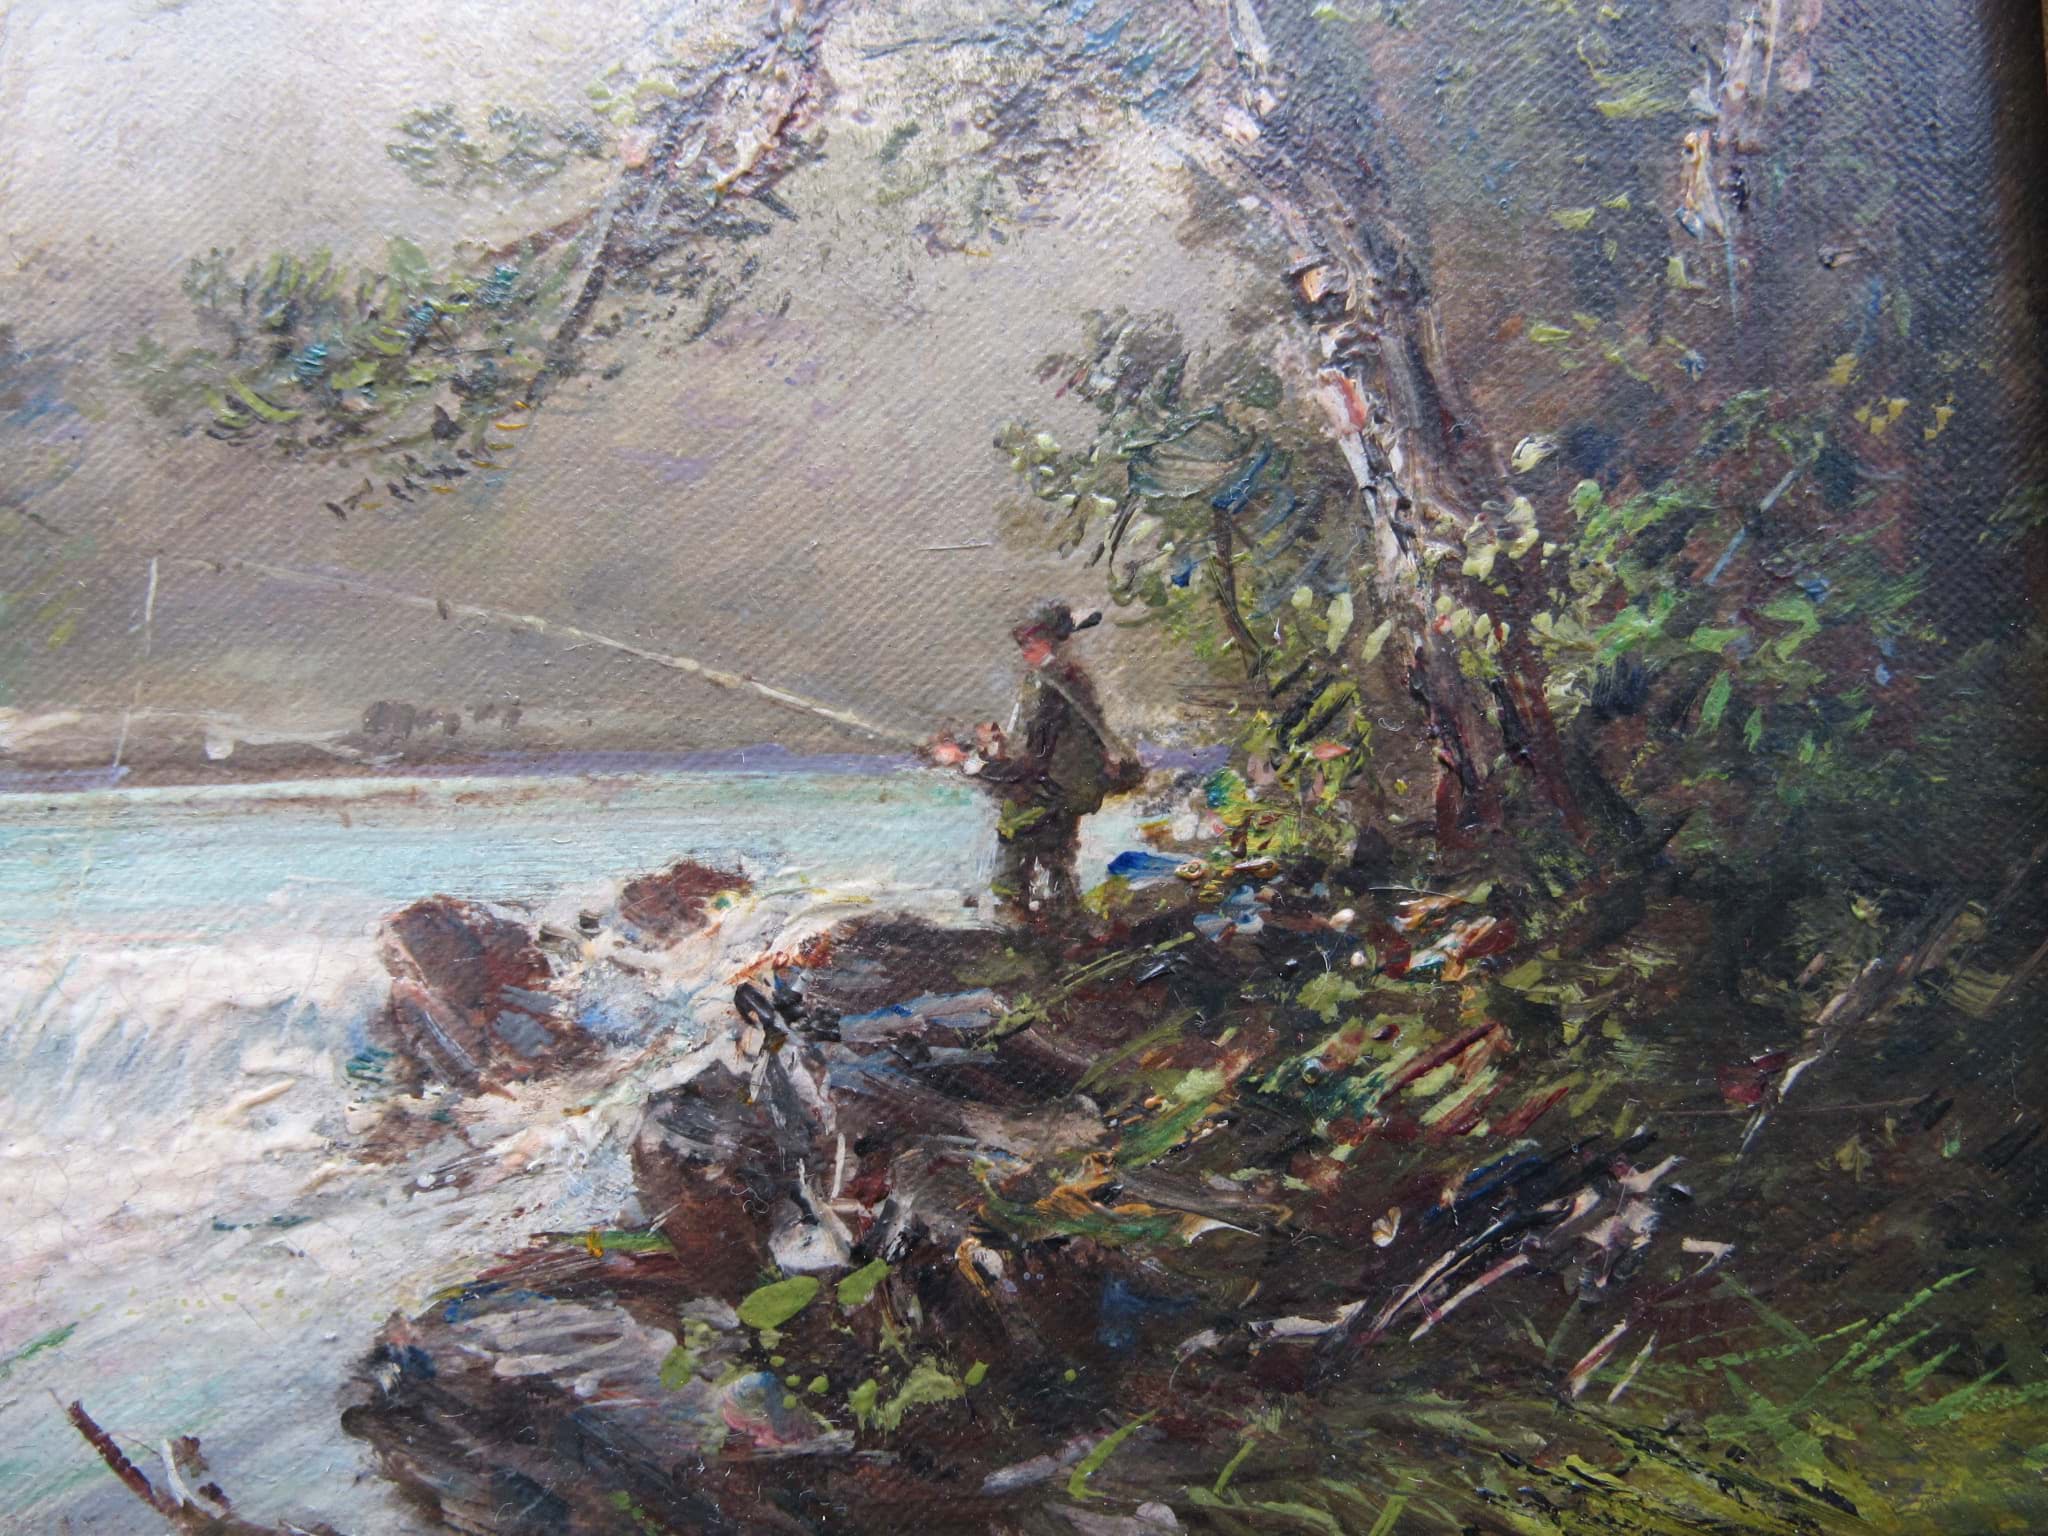 Picture of Gemälde Landschaft, Angler am Fluss, Öl/Leinwand, unbekannter Künstler des 20. Jahrhundert, signiert